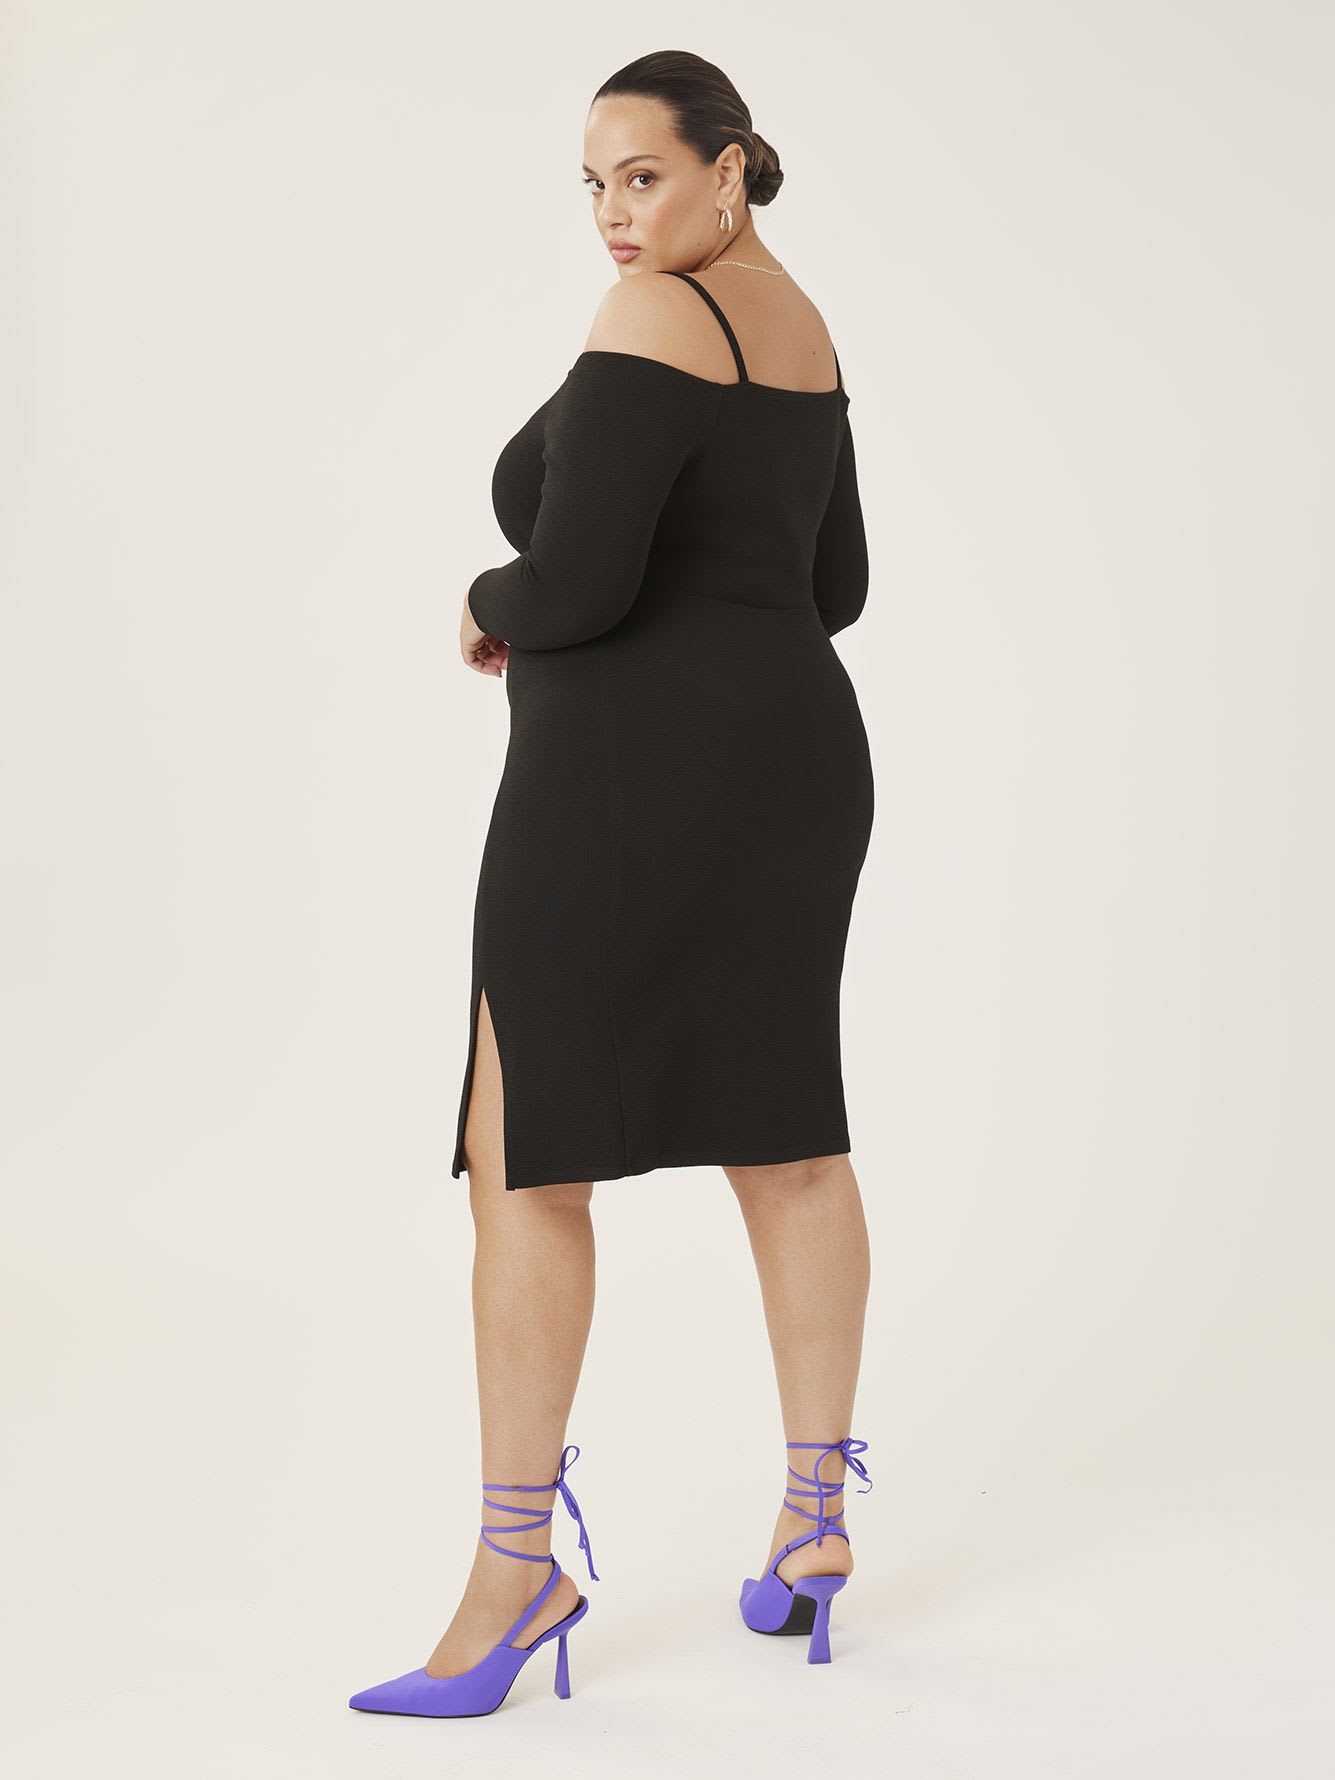 Black Off-the-Shoulder Long-Sleeve Dress - Addition Elle | Penningtons